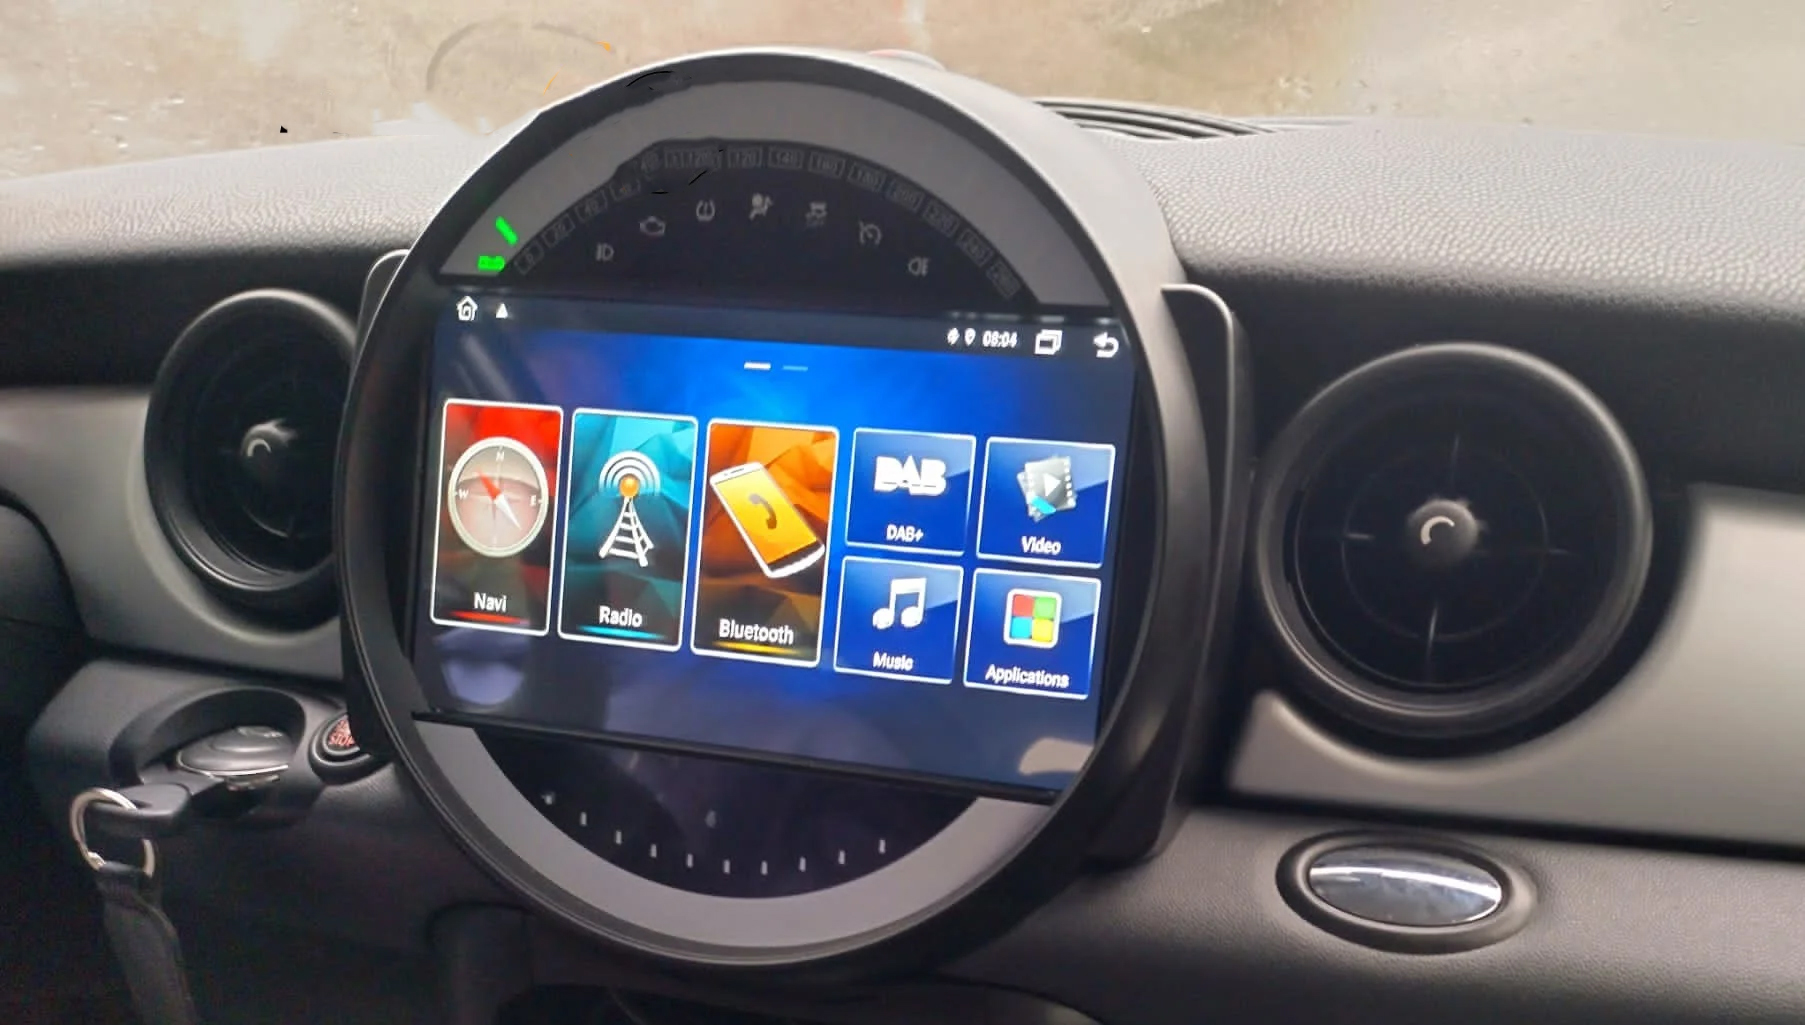 Autoradio tactile GPS Android 13.0 et Bluetooth Mini Cooper R56, Roadster R59, Coupé R58 et Clubman R55 de 2010 à 2015